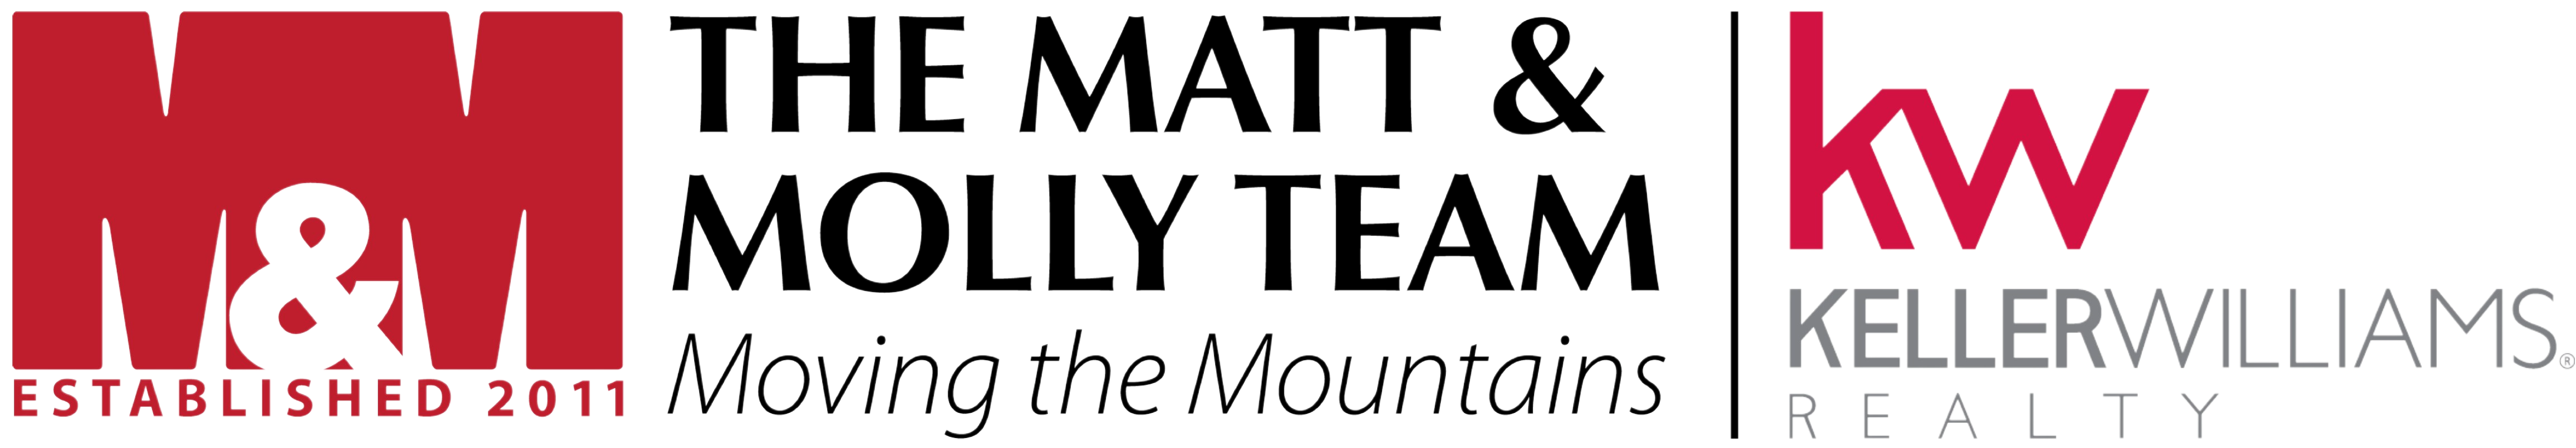 The Matt & Molly Team $1,000